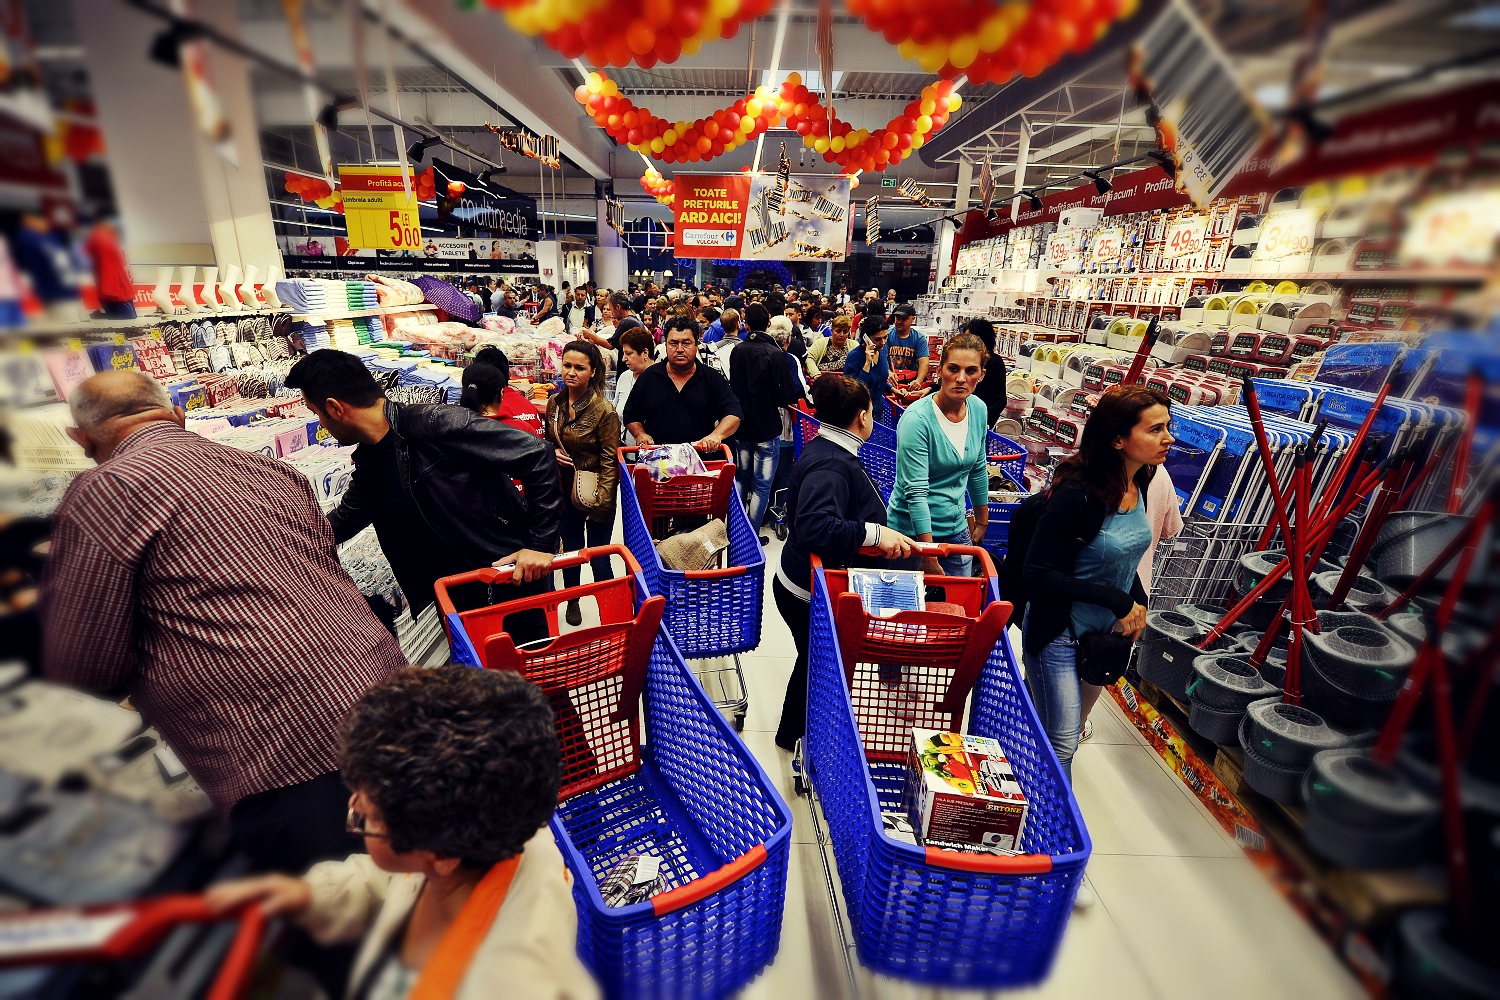 While market. Супермаркеты в Греции. Румынский супермаркет. Supermarket. Людный магазин.